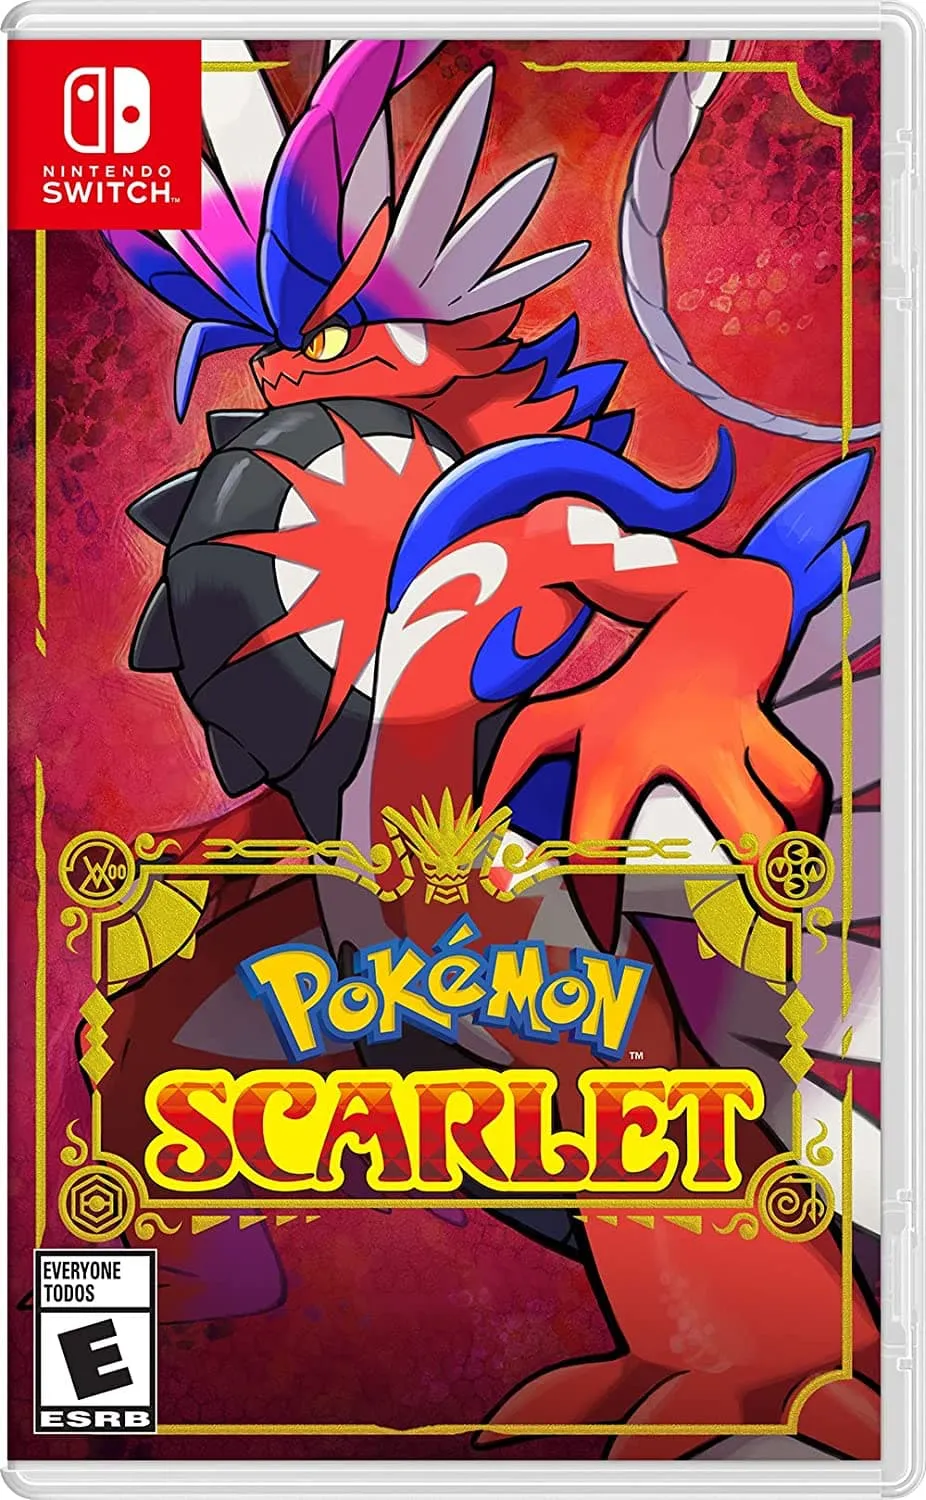 Pokémon Scarlet Nintendo Switch albumo meno kūriniai.